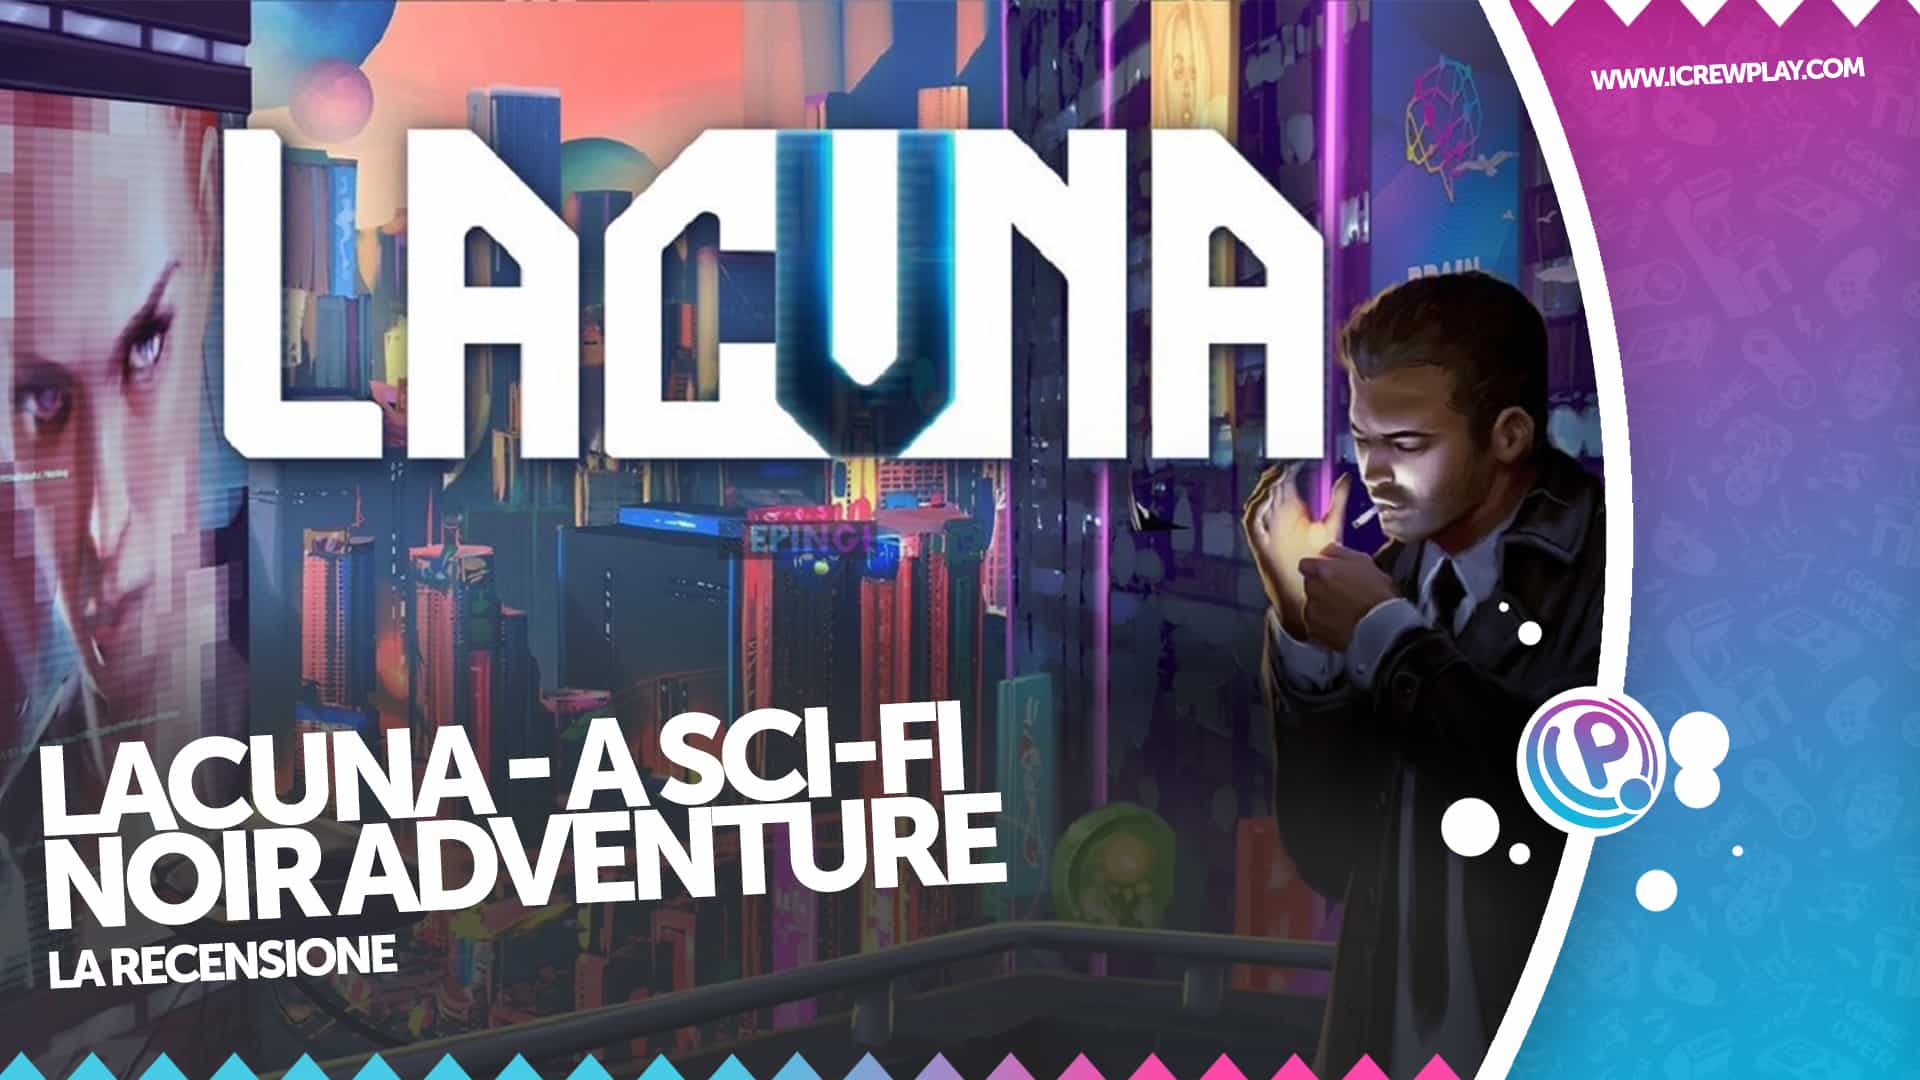 Lacuna: A Sci-Fi Noir Adventure